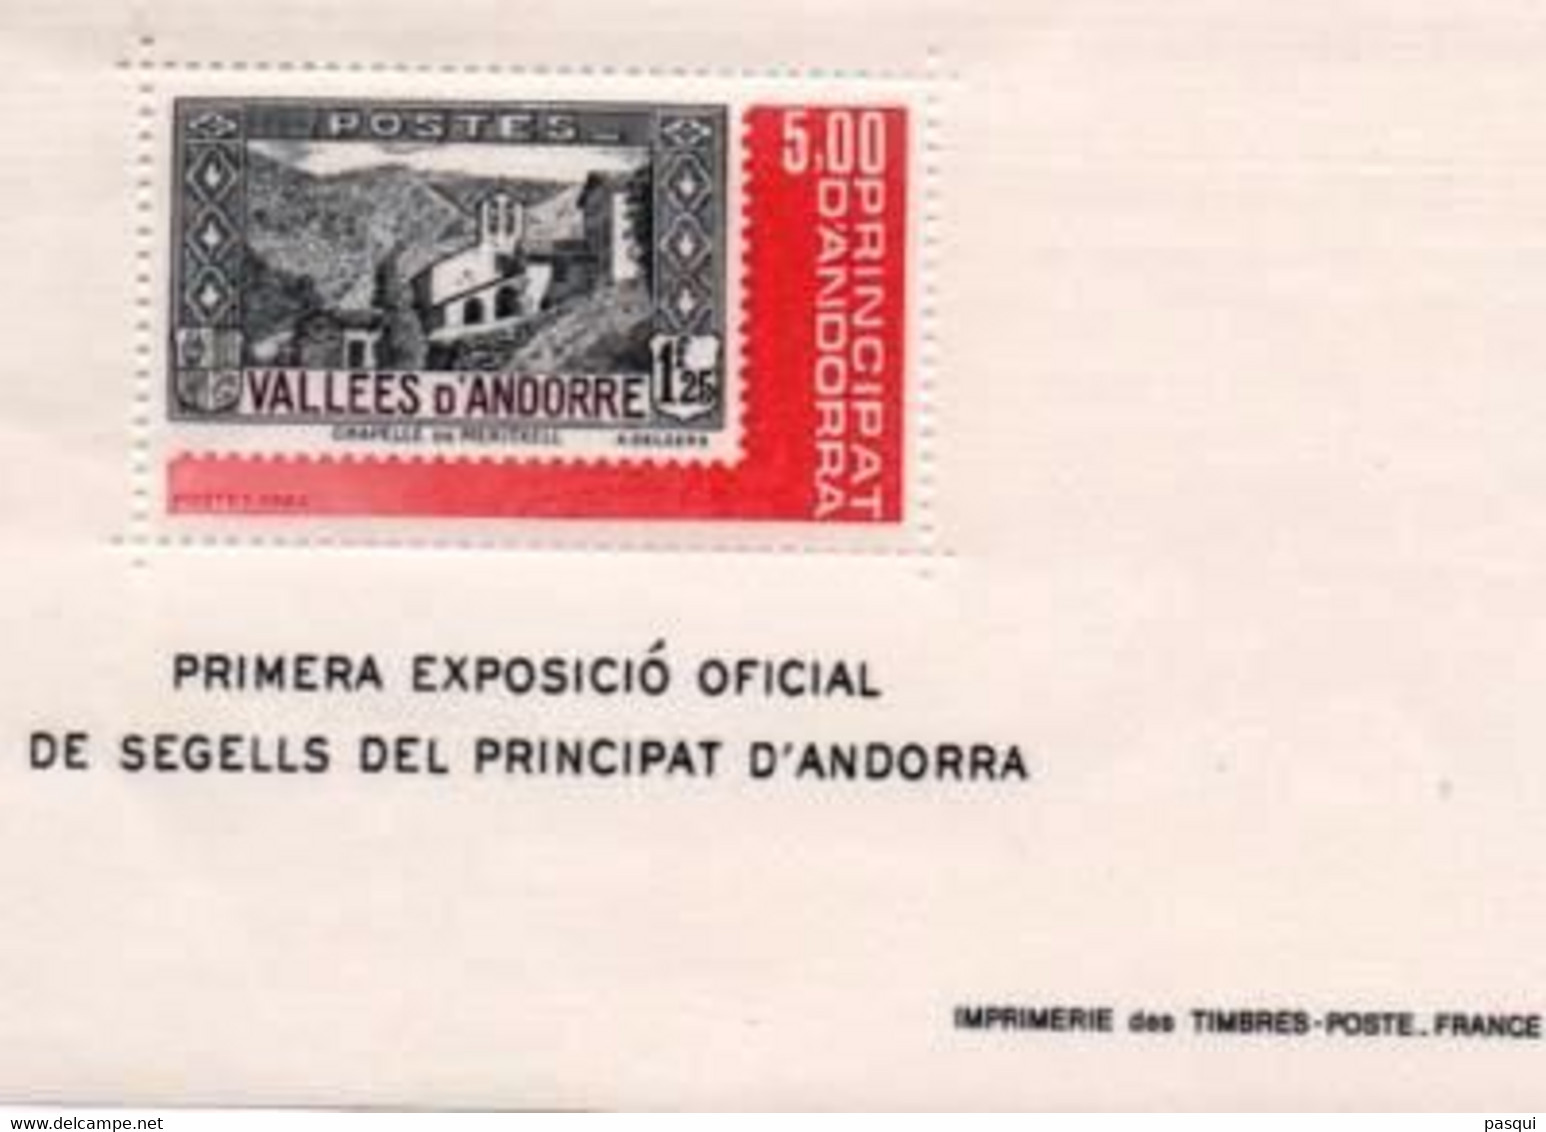 ANDORRA FRANCESA - Fx. 988 - Yv. Bl. 1 - Exp. Filatelica Nacional - Capilla De Merixcell - 1982 - ** - Blocs-feuillets